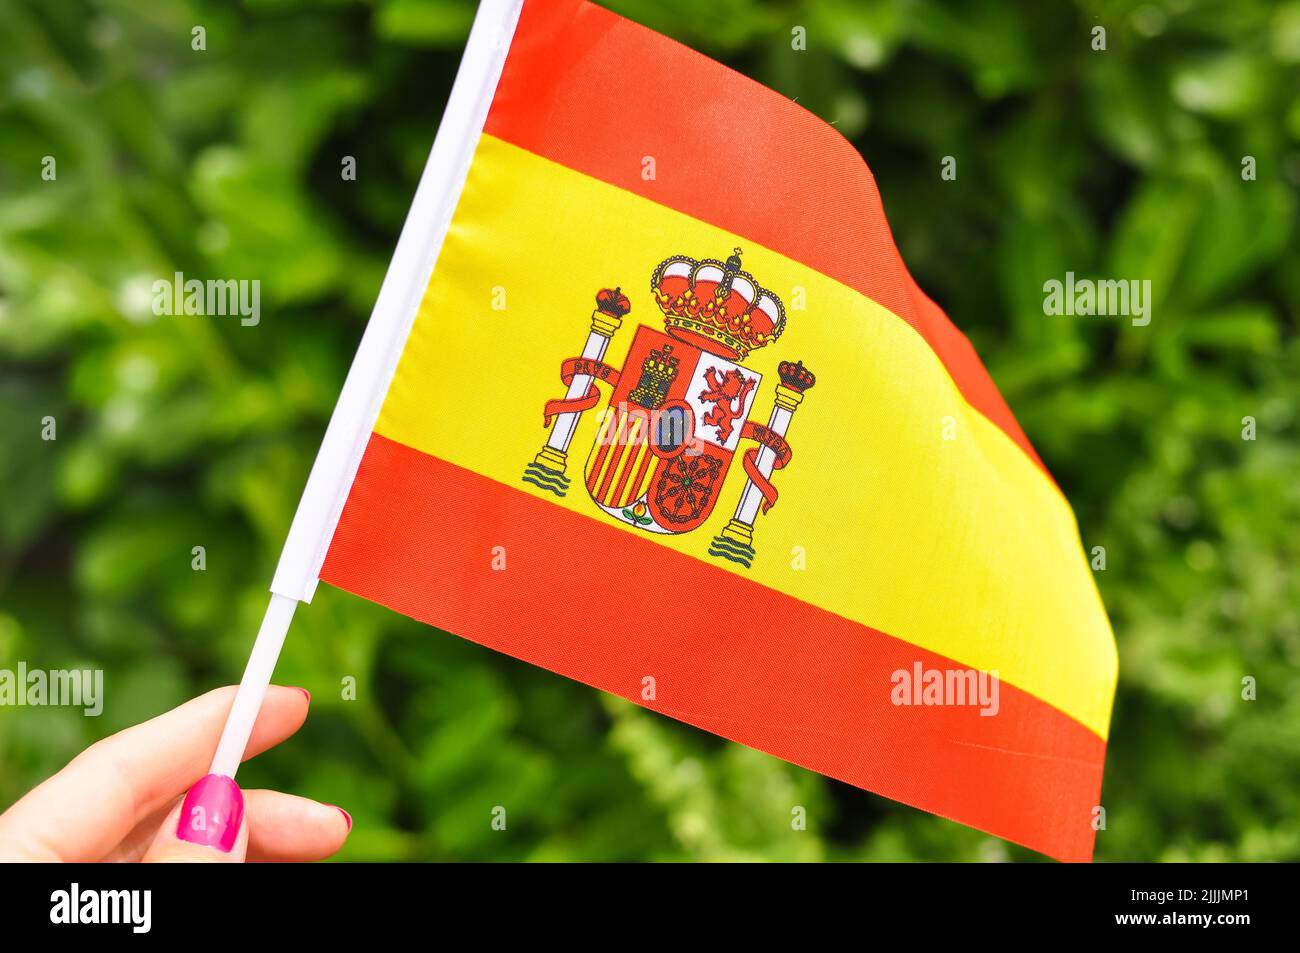 Gros plan du drapeau national espagnol jaune et rouge, drapeau de la main. Banque D'Images